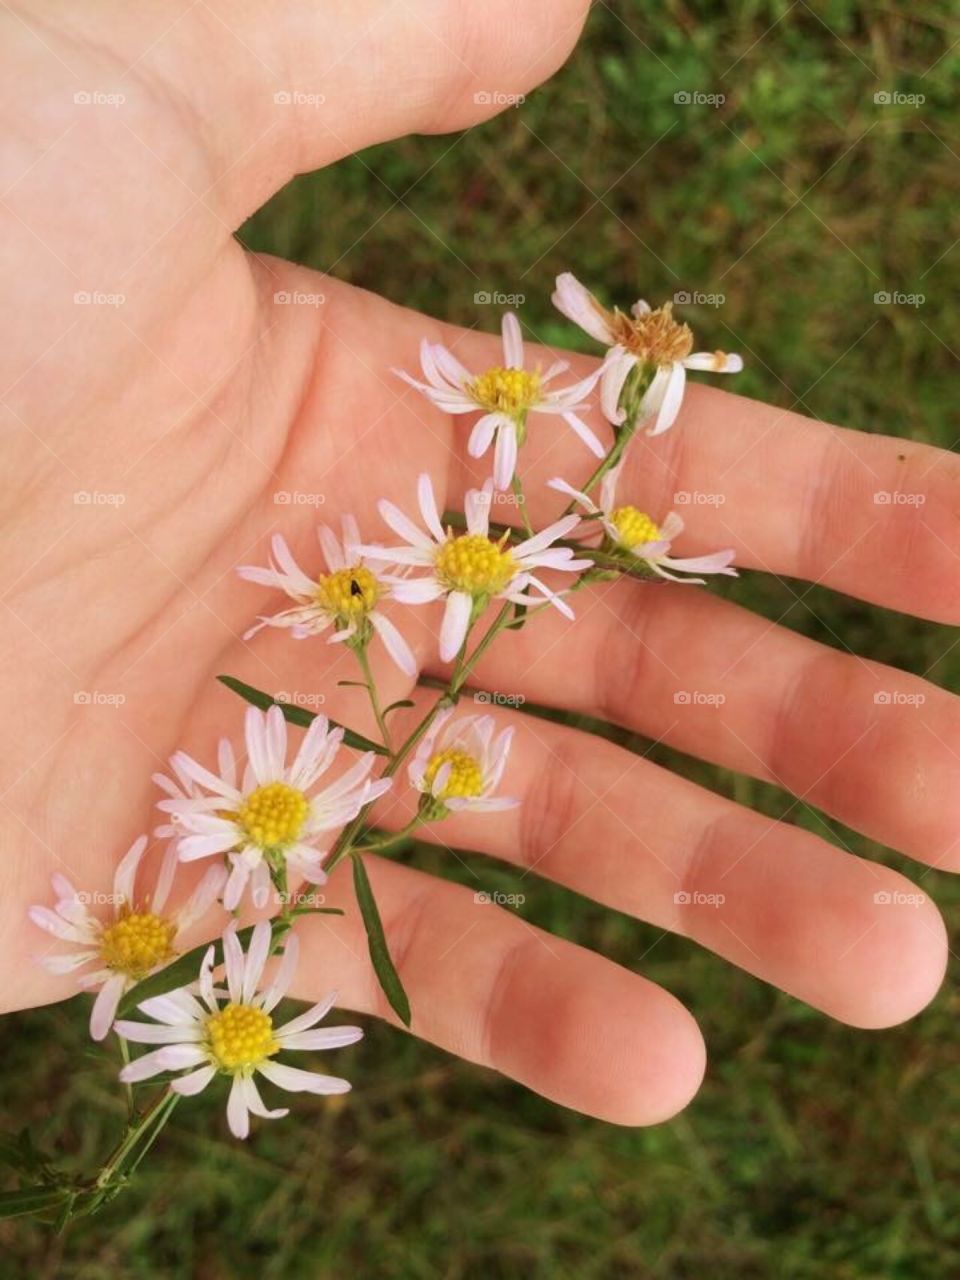 Flowers in hands 